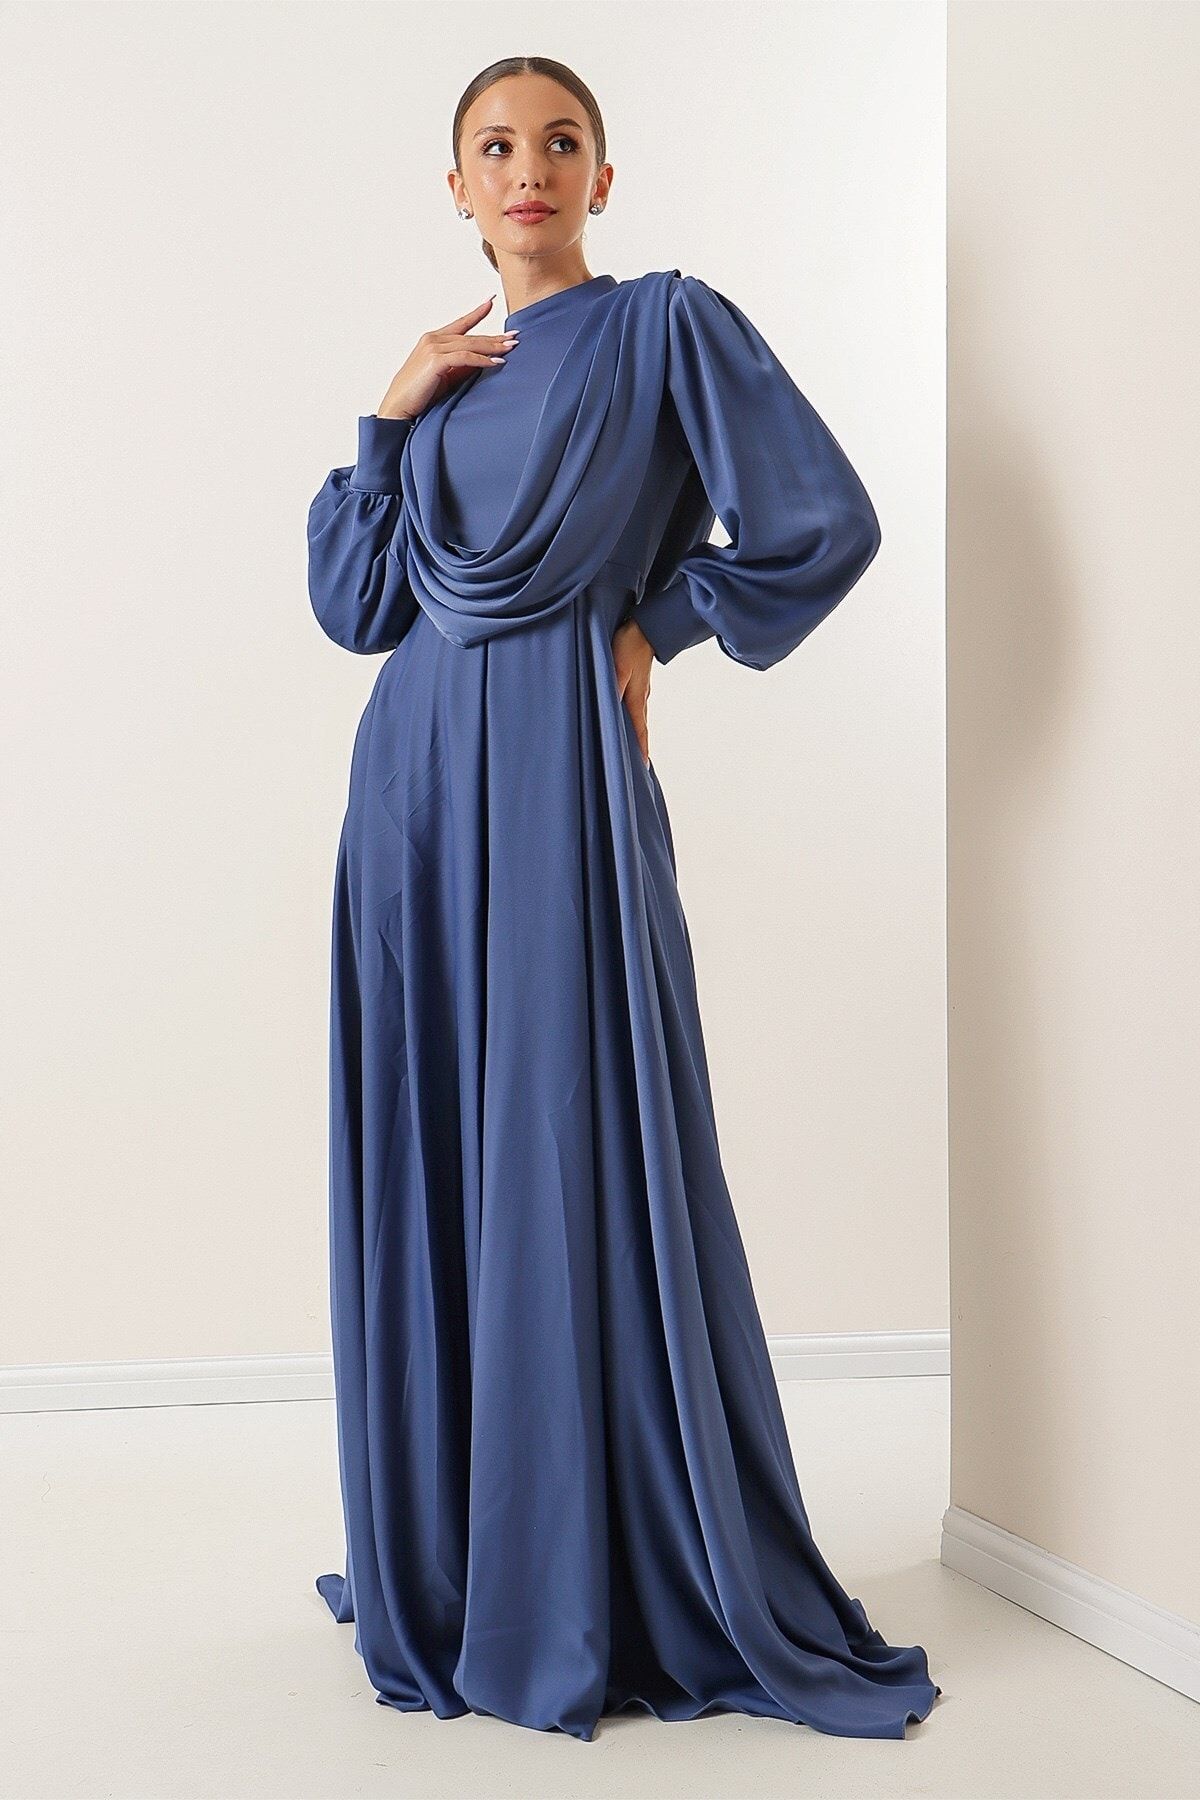 By Saygı Önü Dökümlü Kolları Düğme Detaylı Astarlı Uzun Saten Elbise Indigo